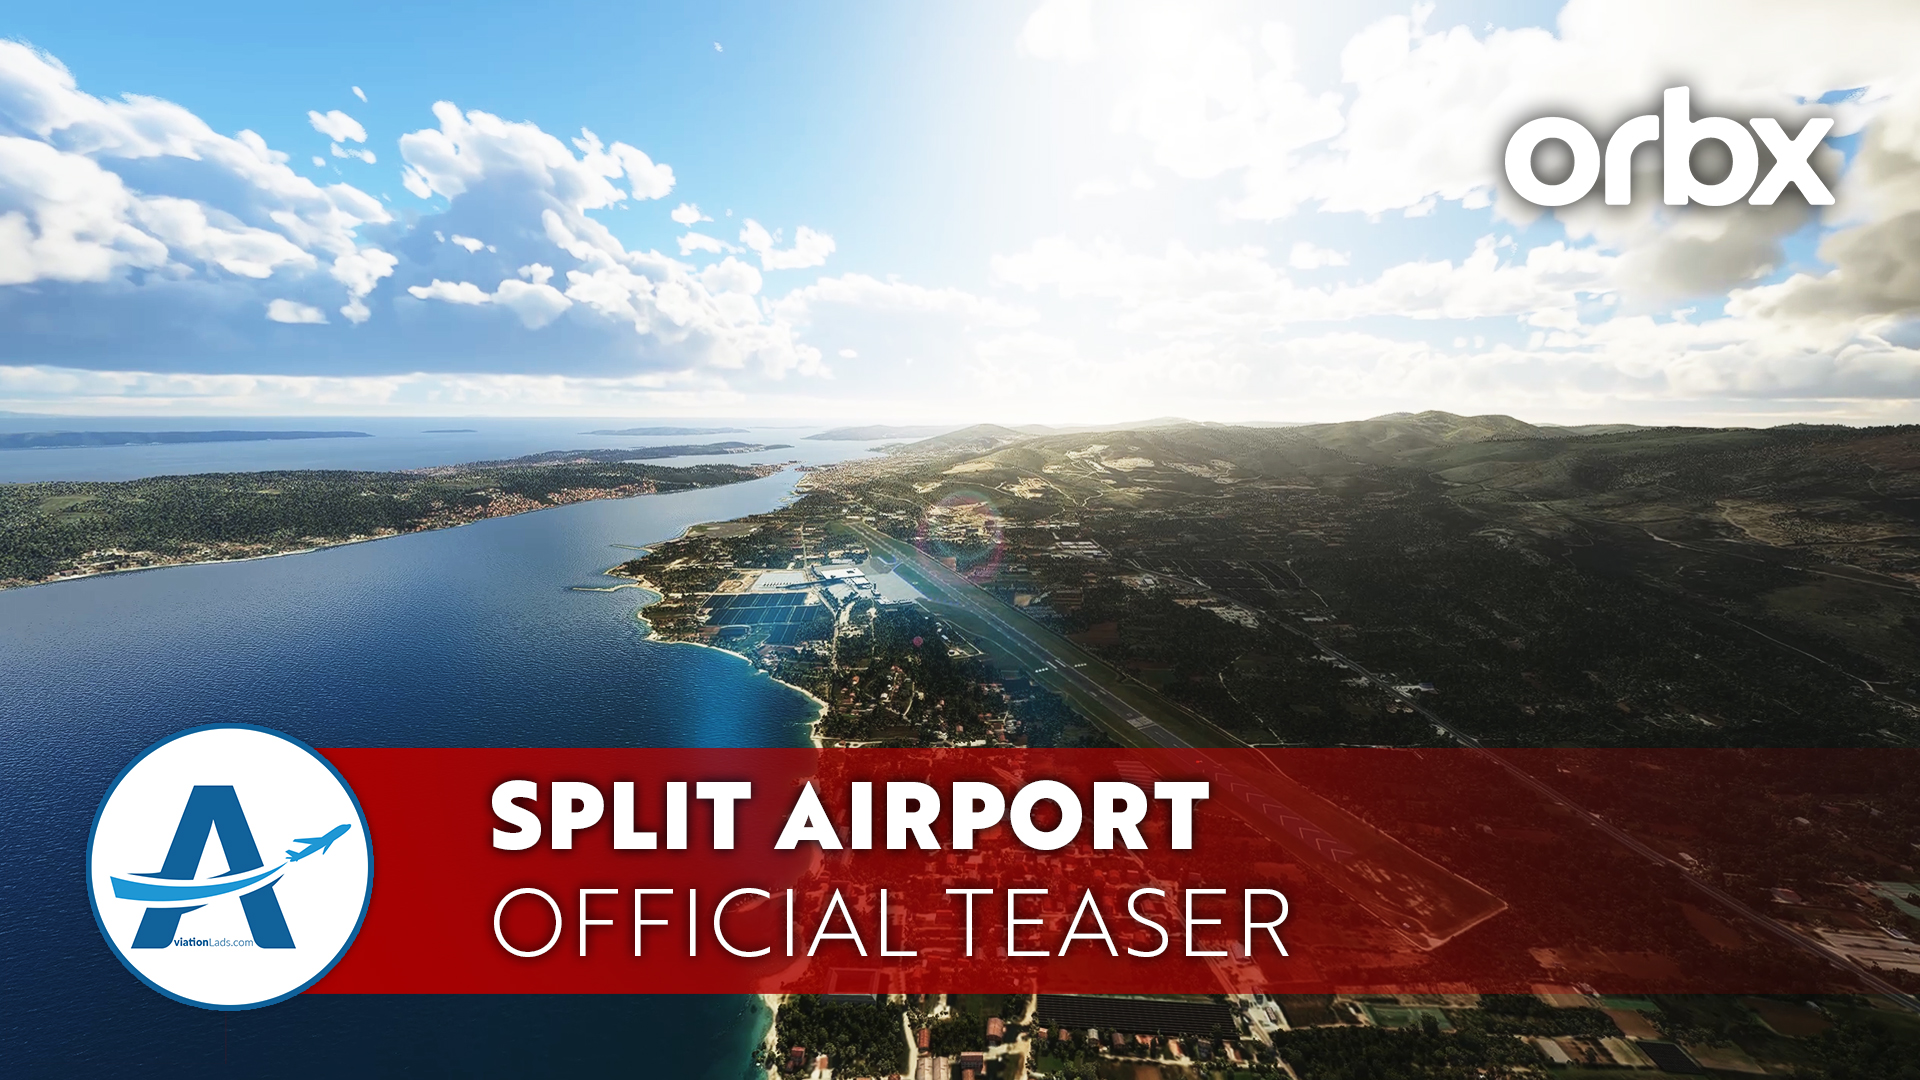 [TEASER] Orbx Split Airport